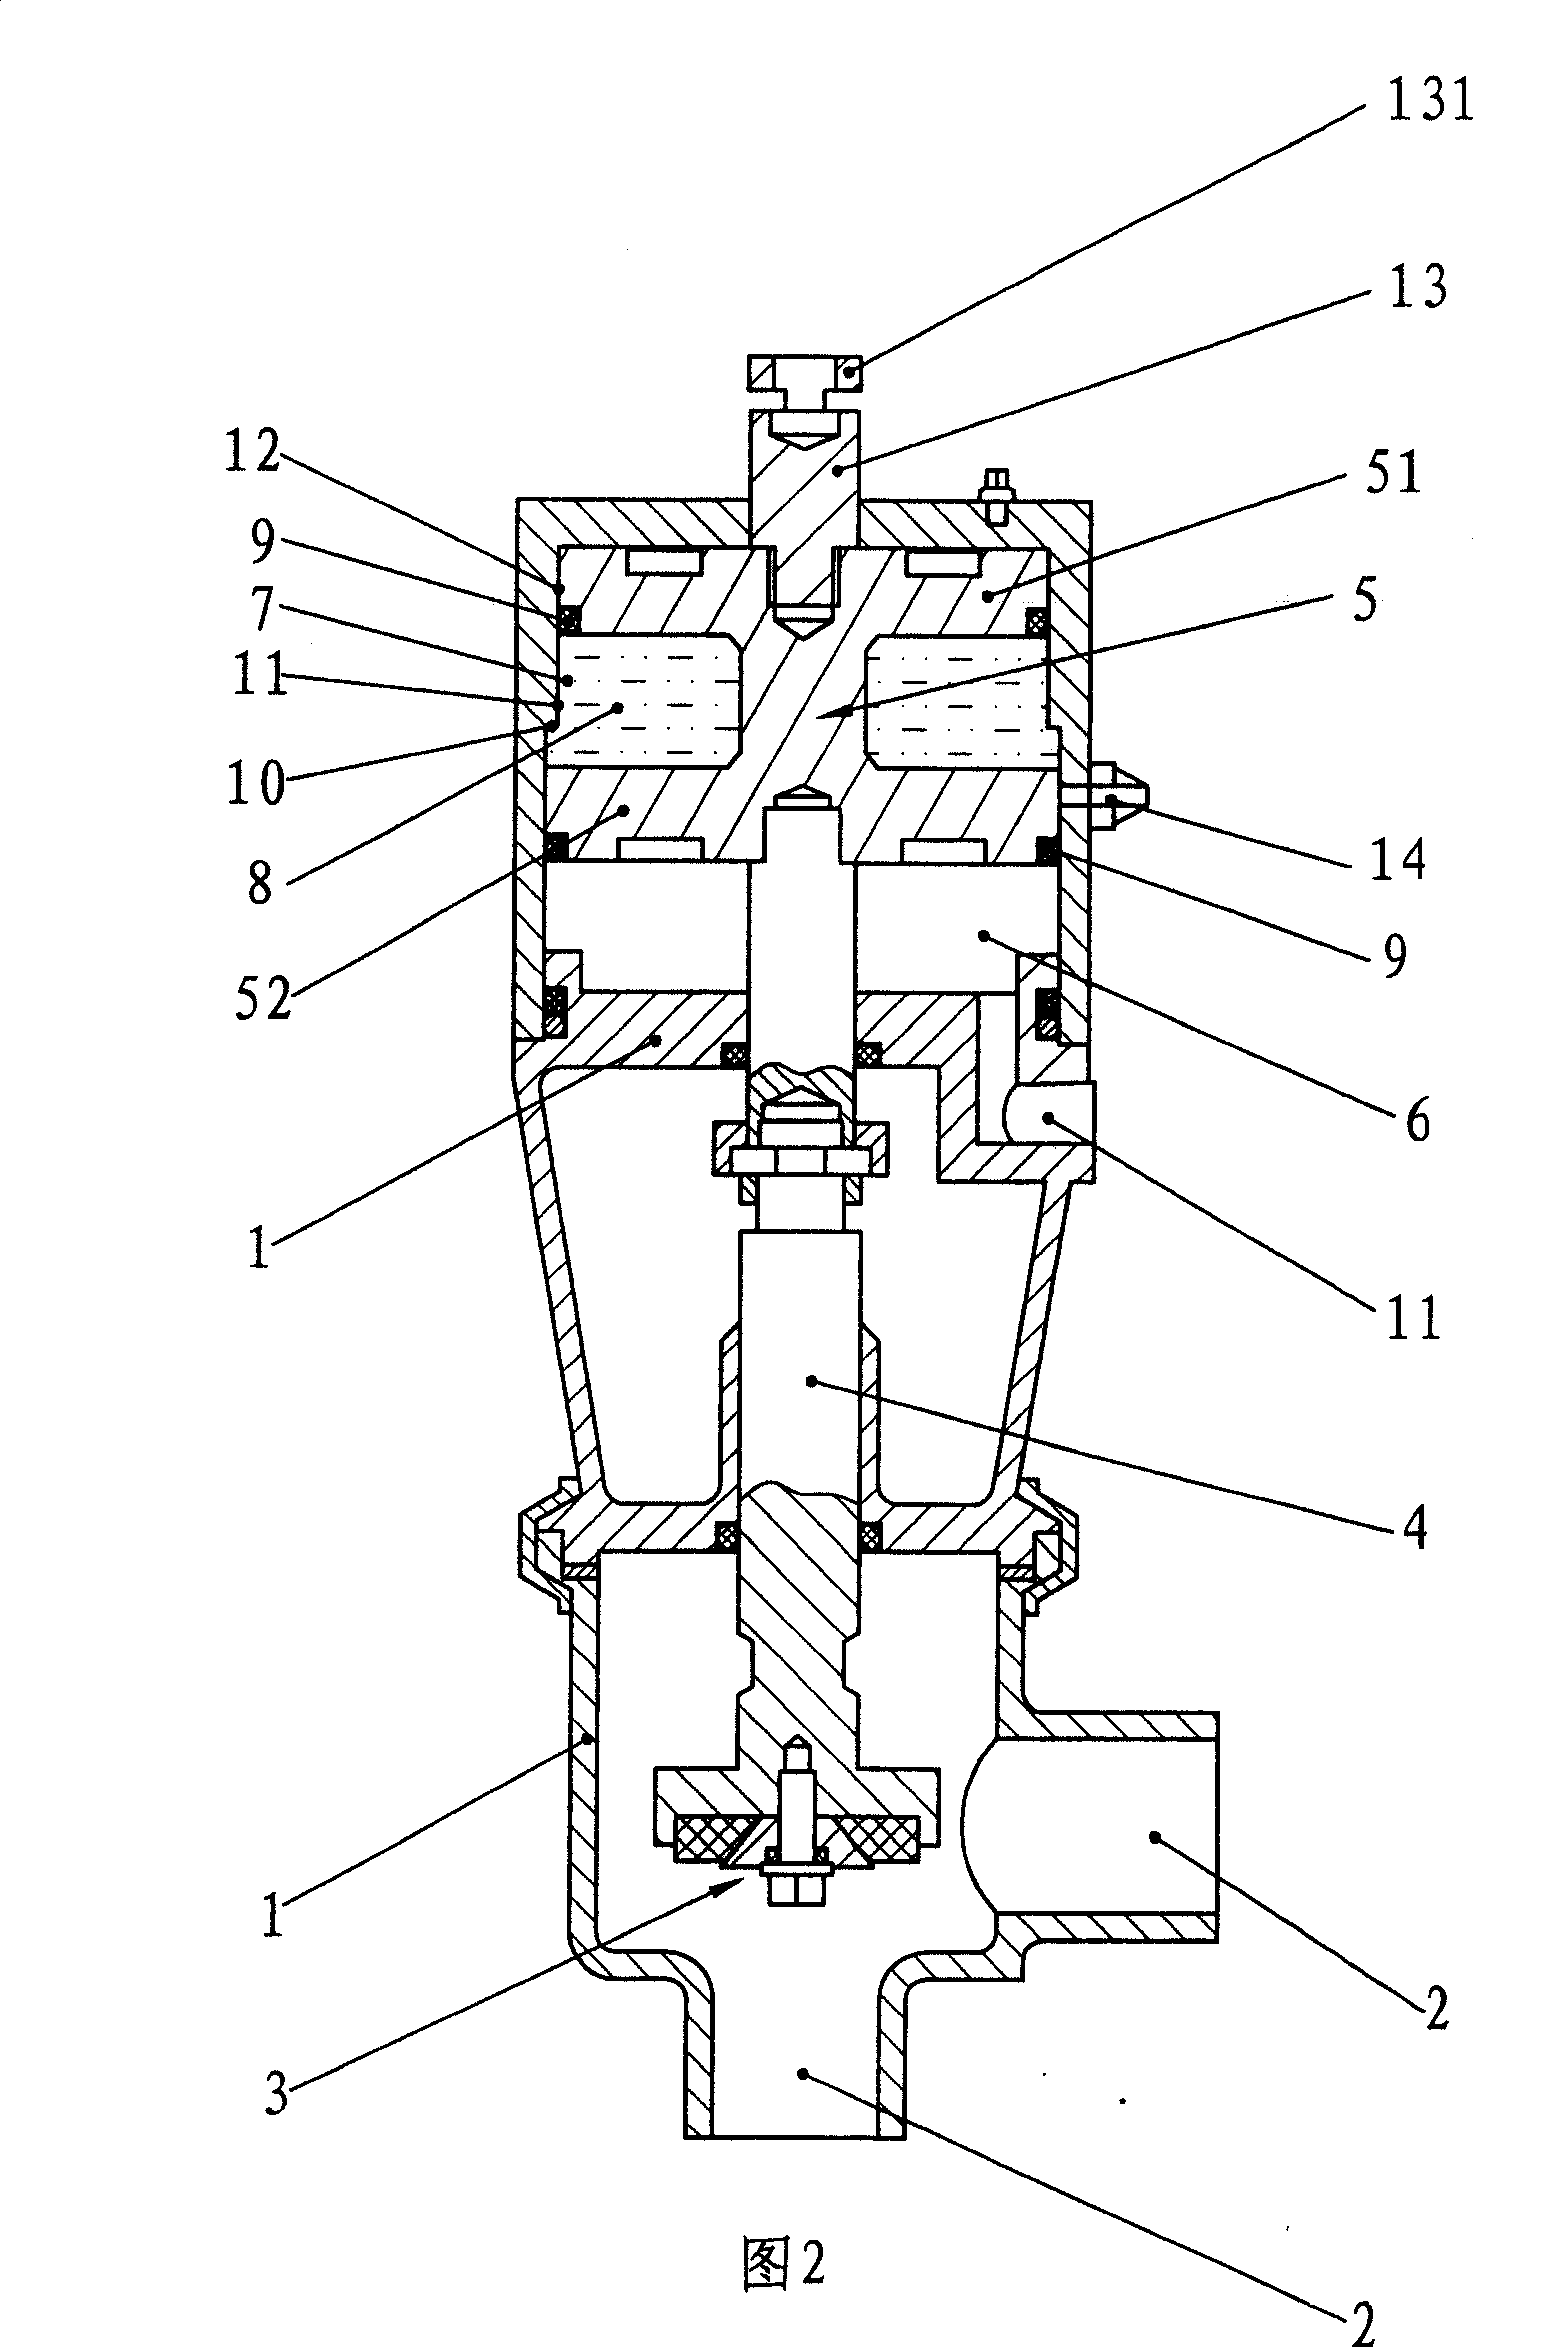 Liquid-controlled type multi-purpose valve